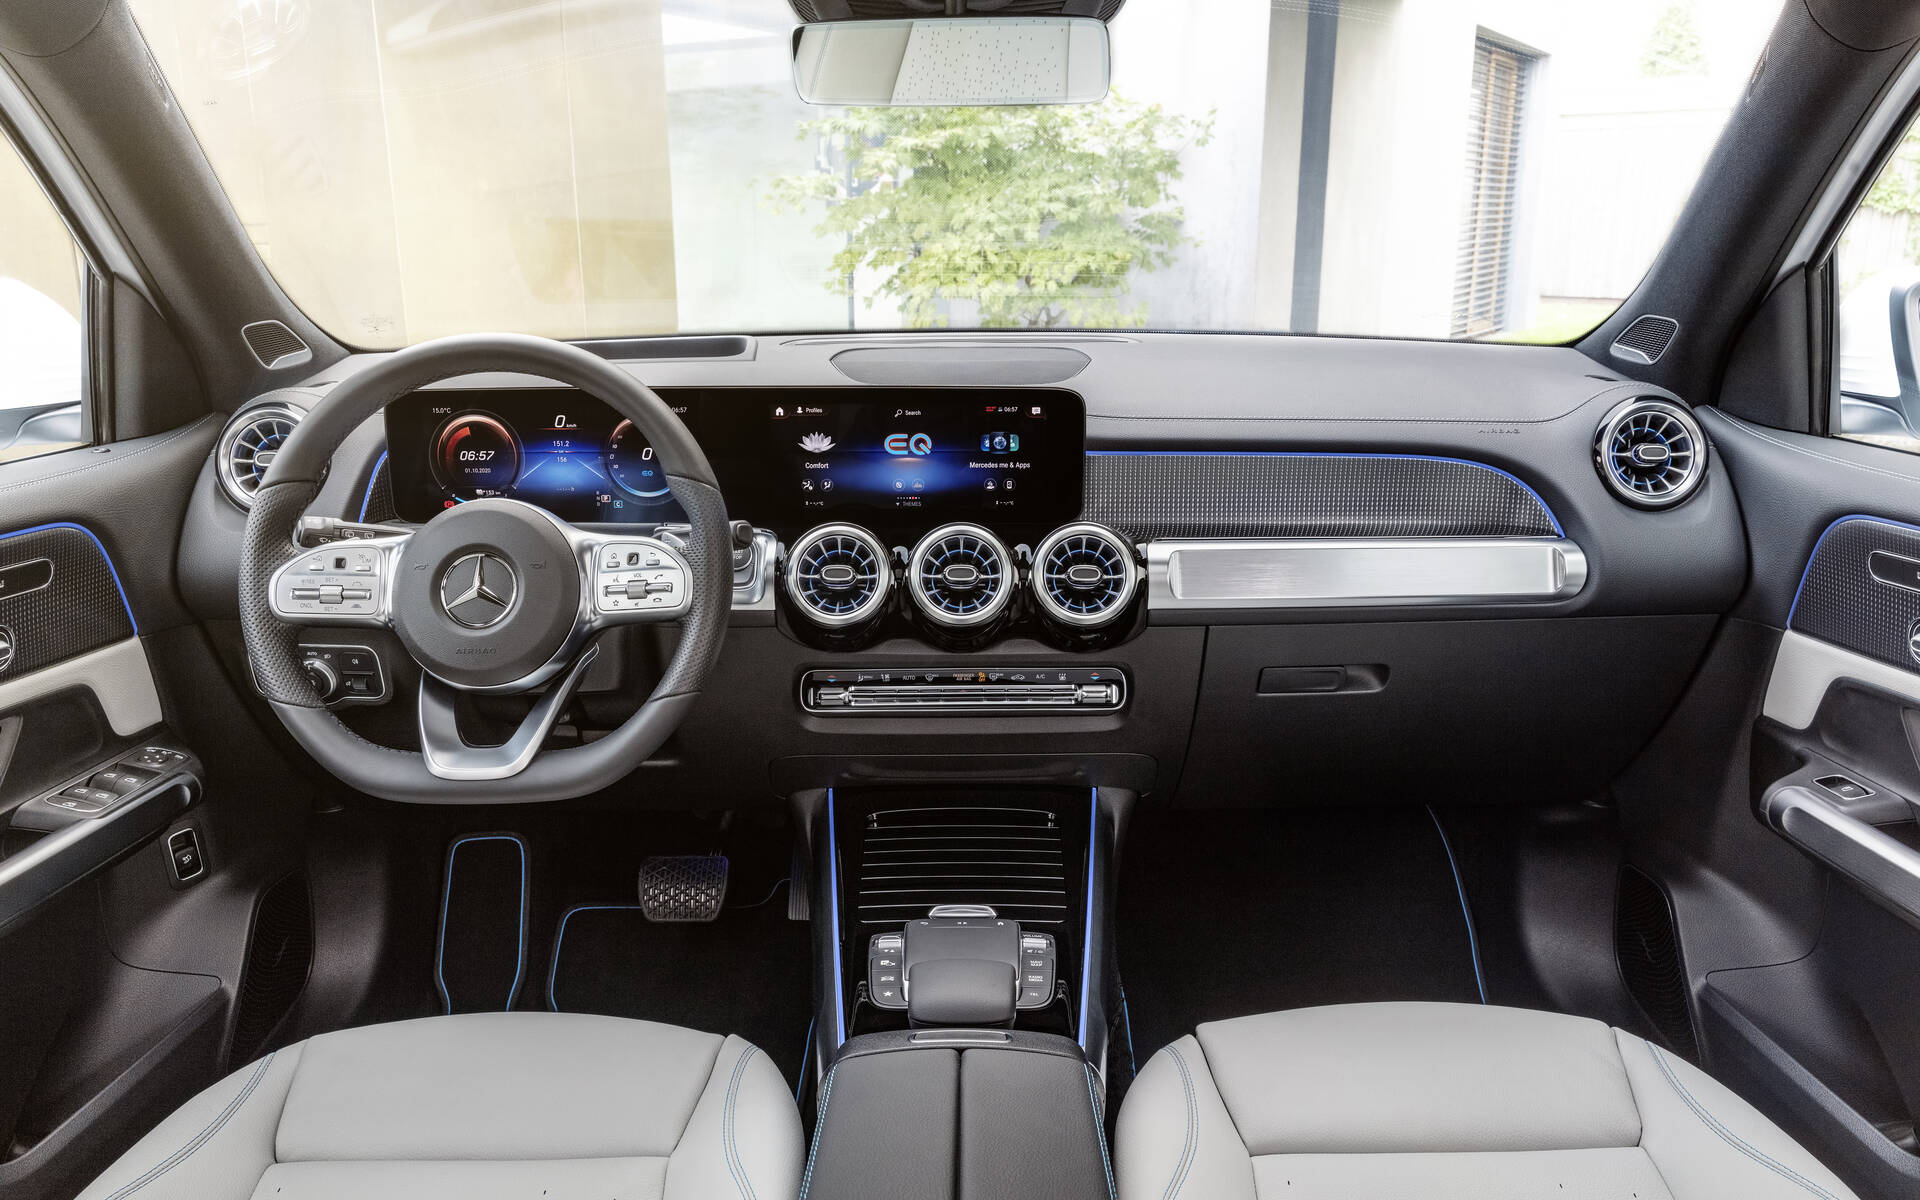 Plus de 75 000 $ pour le Mercedes-Benz EQB 528755-mercedes-benz-eqb-le-prix-du-vus-electrique-est-annonce